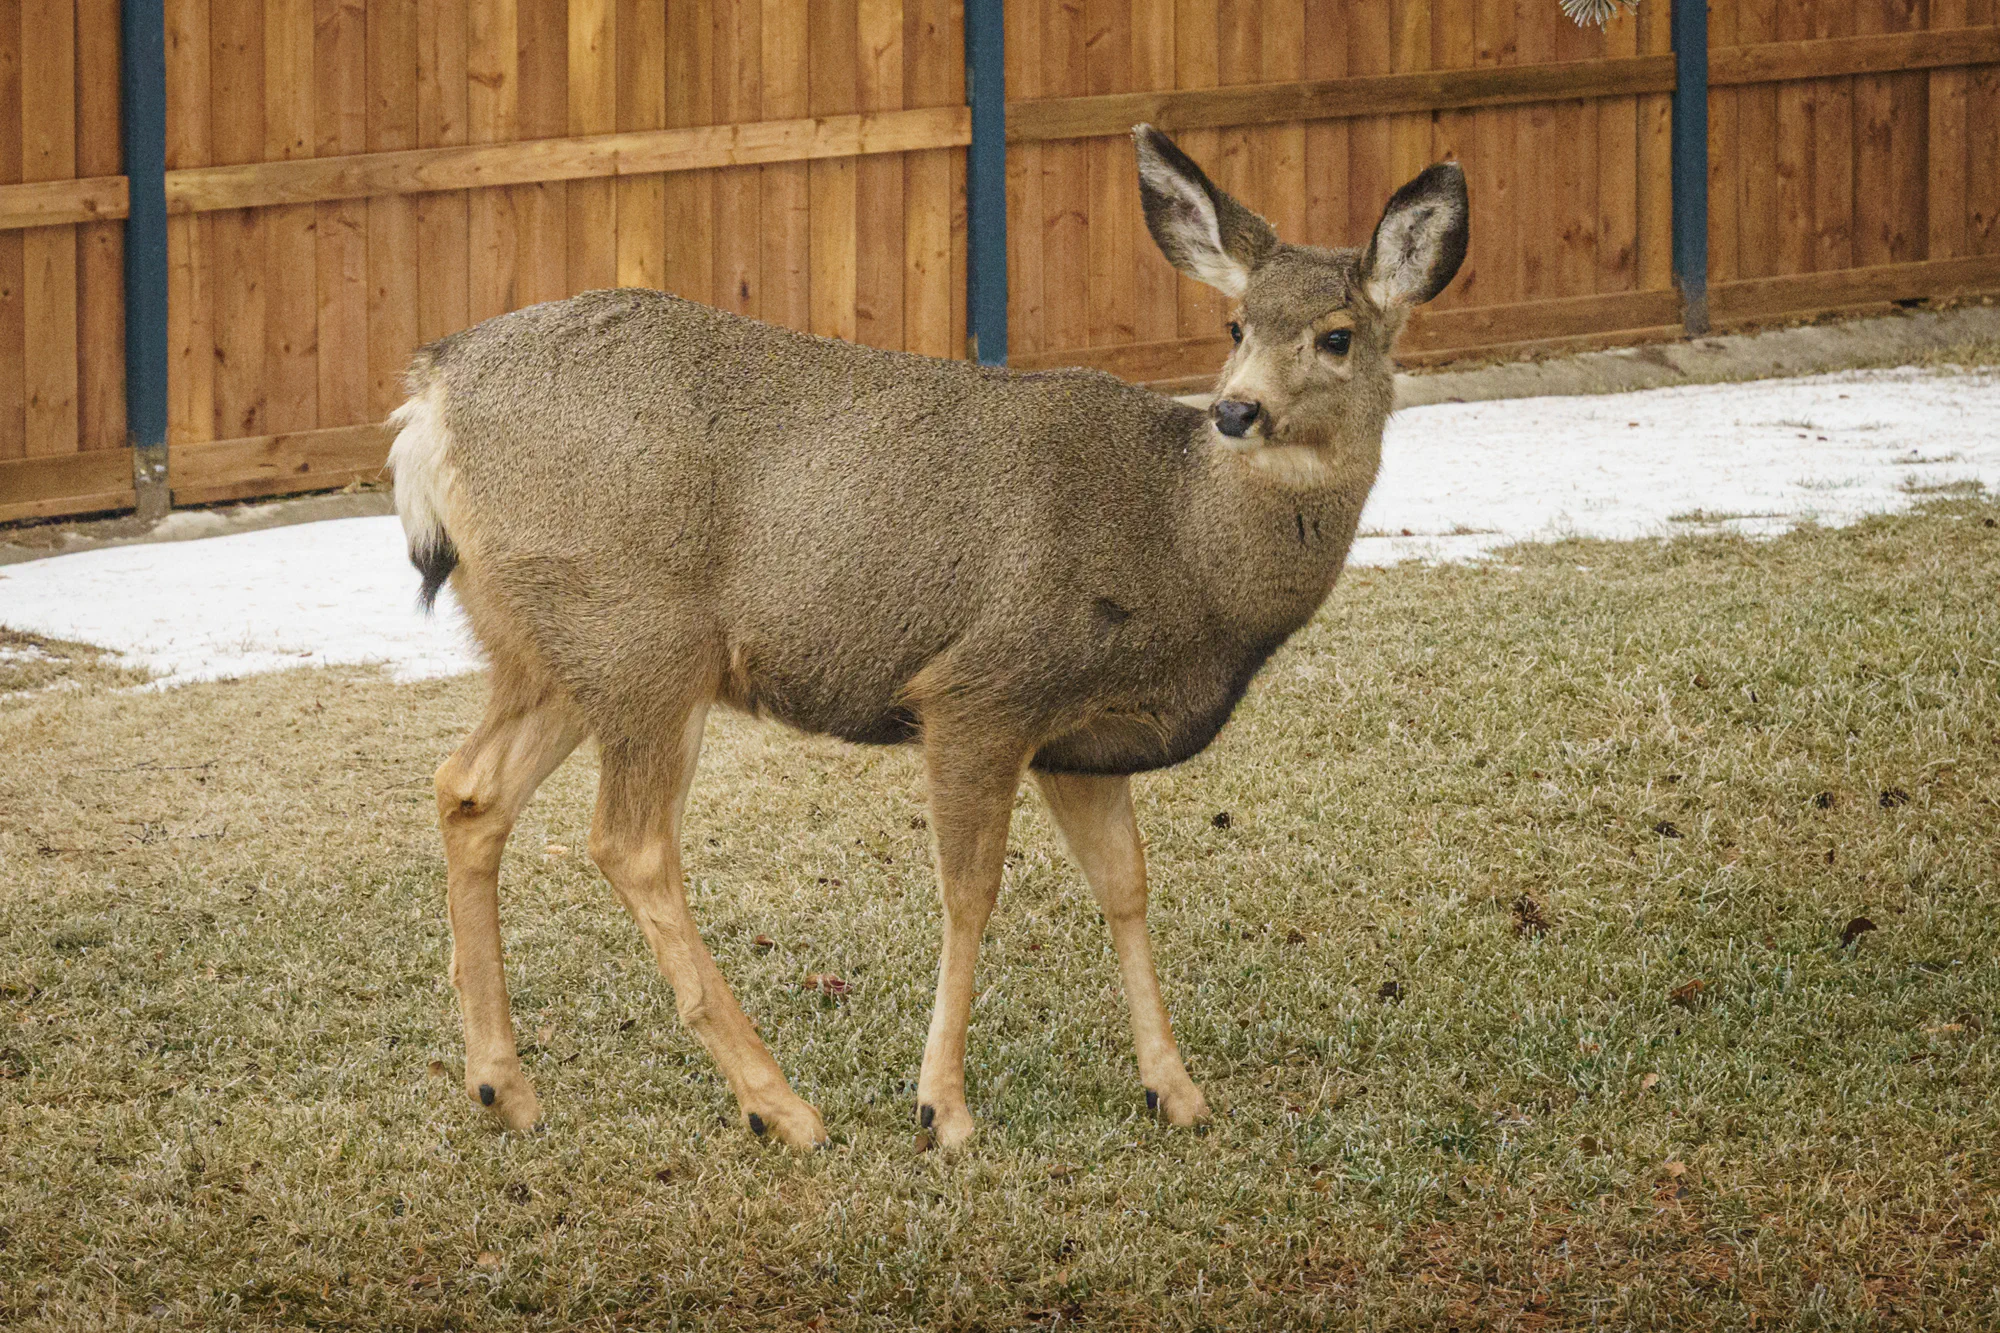 We have a backyard deer